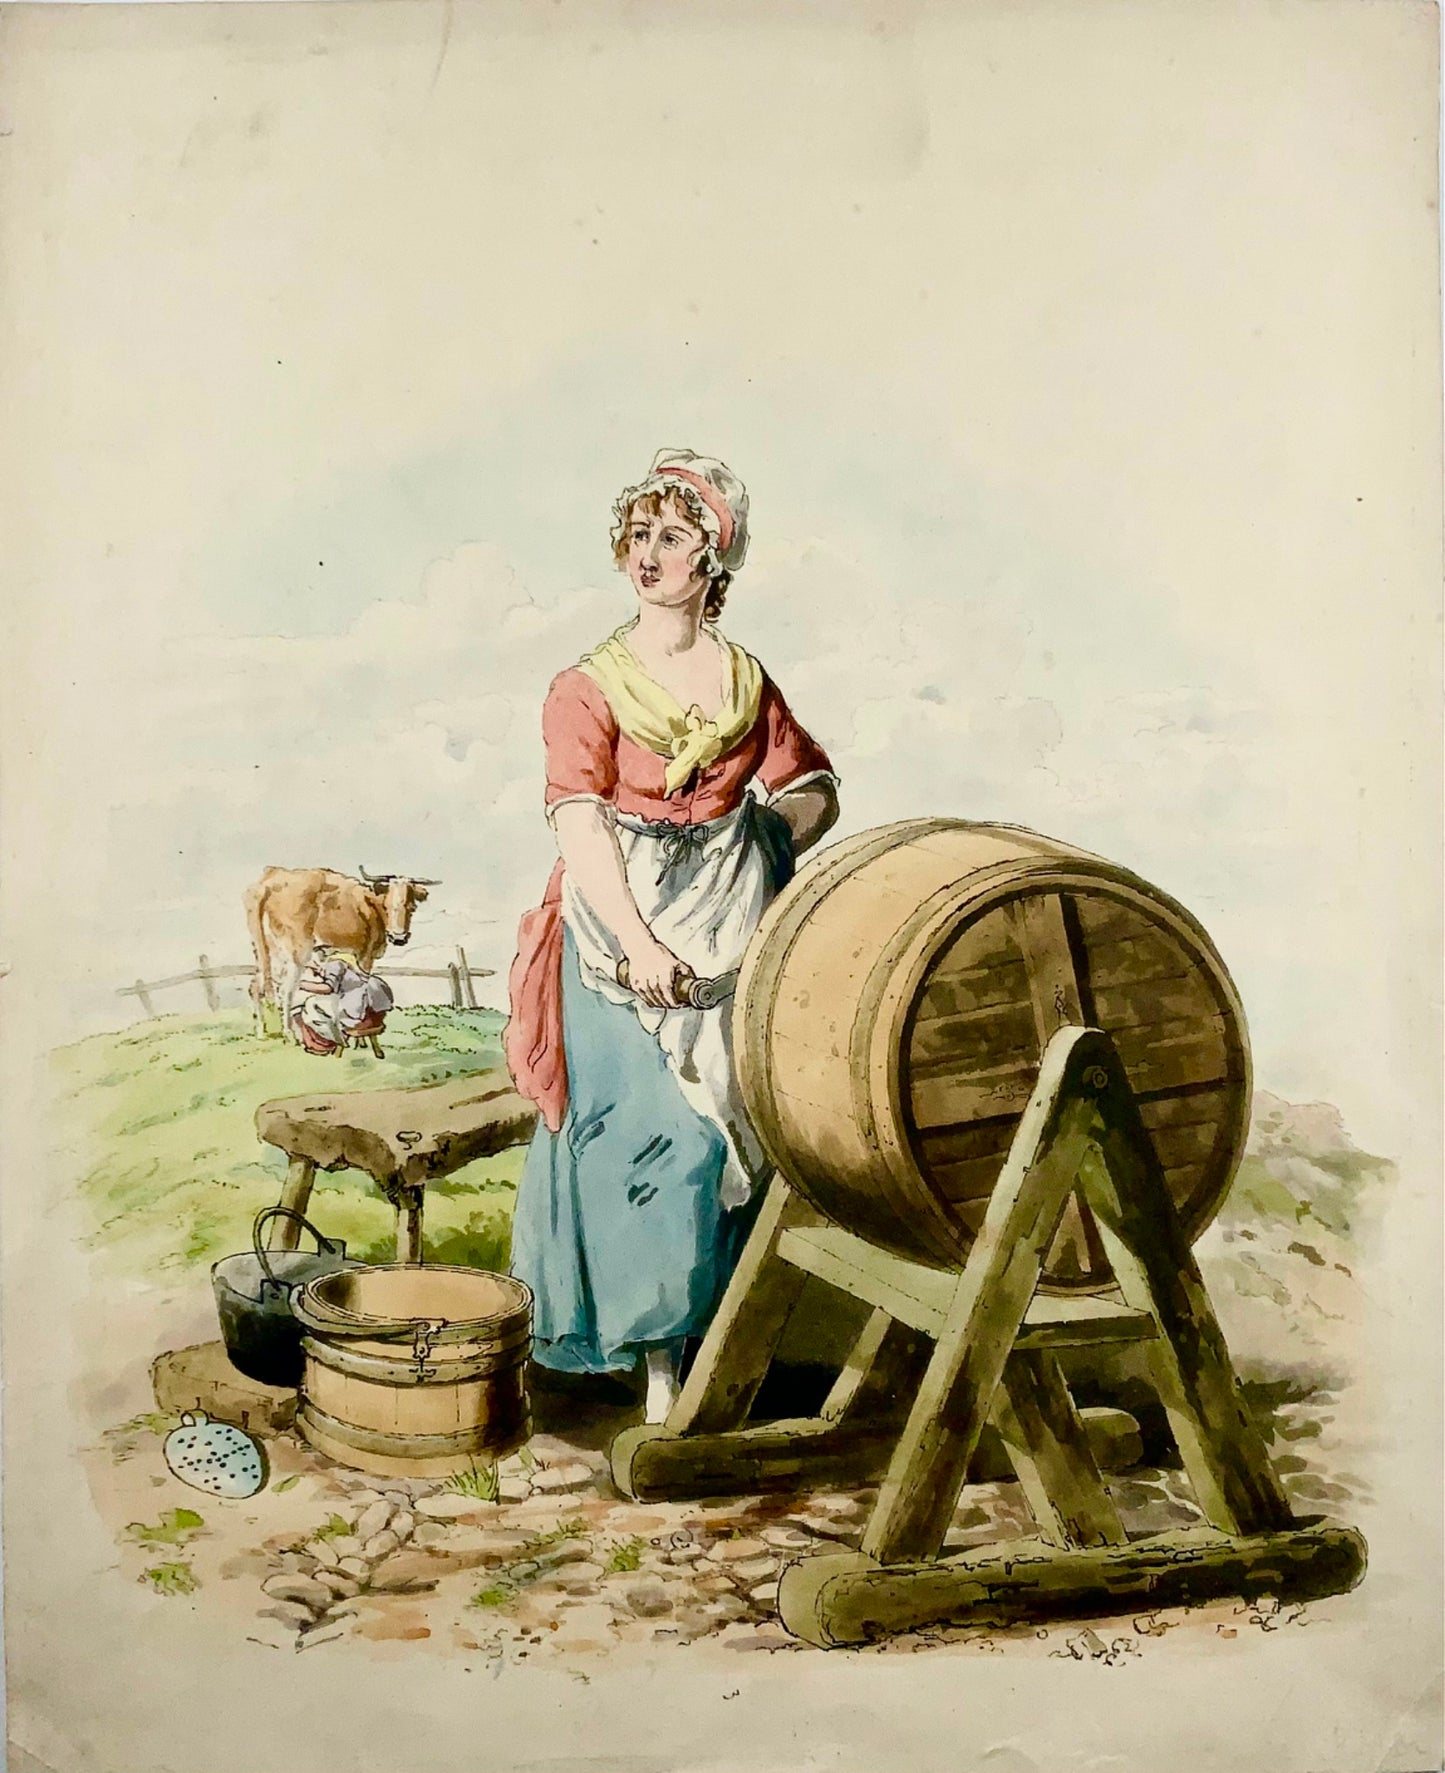 1805 Milk Maid, burro, mungitura, Wm Miller, acquatinta in folio con colori a mano, agricoltura, mestieri